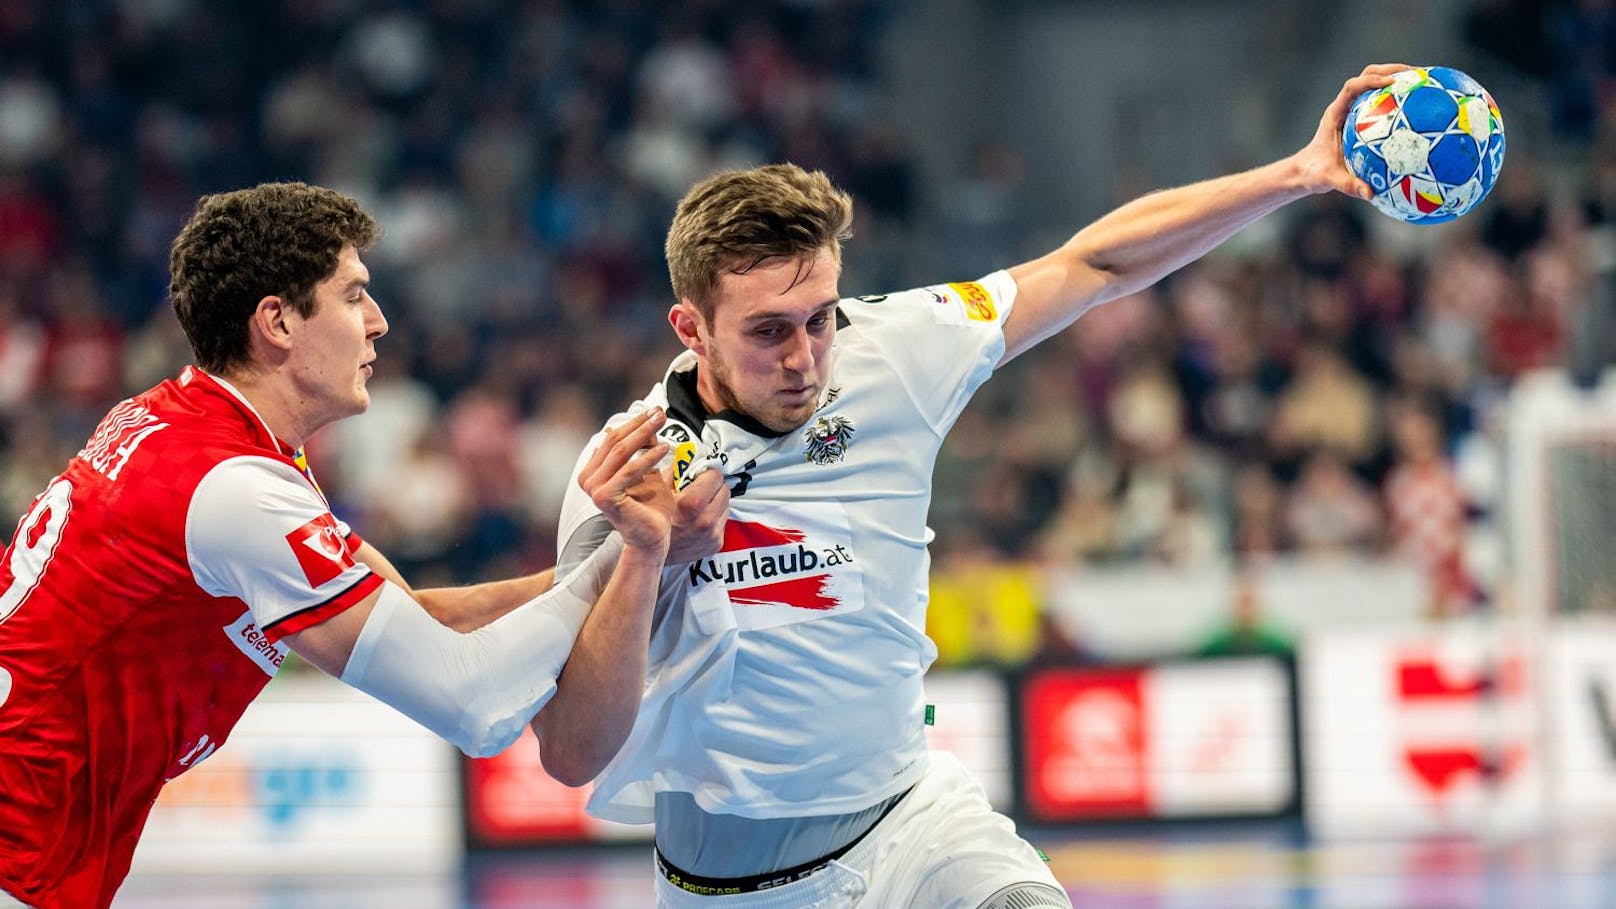 Österreich mit EM-Wunder gegen Handball-Riese Kroatien